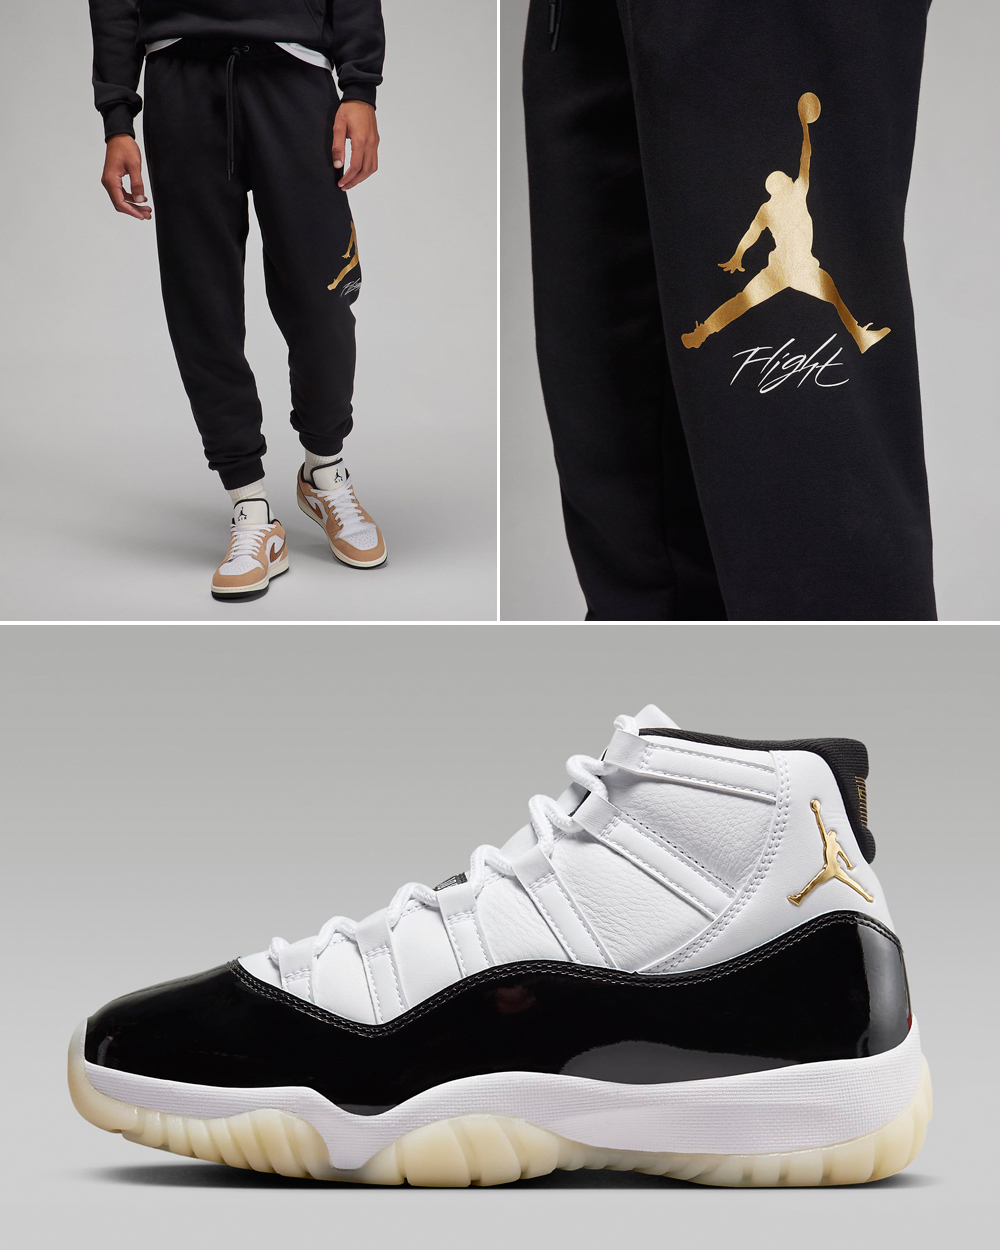 Air-Jordan-11-Gratitude-Pants-Matching-Outfit